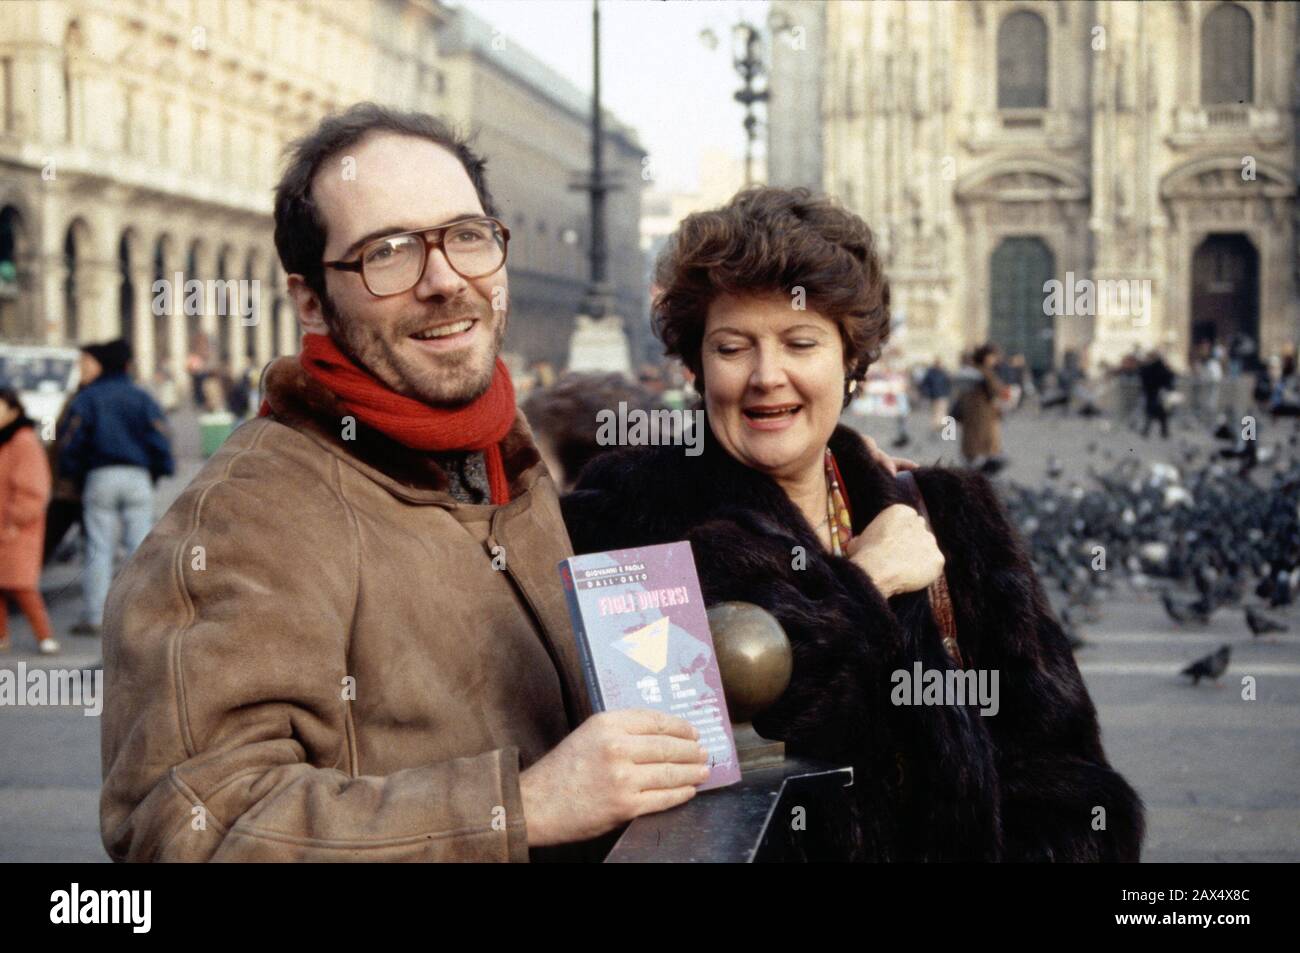 1991 , Mailand , ITALIEN : Der italienische Schriftsteller und Führer der schwulen politischen Bewegung GIOVANNI DALL'ORTO ( geboren 1958 in Mailand ) mit seiner Mutter PAOLA DALL'ORTO, präsidentin von AGEDO ( Associazione Genitori di omosessuali ), Ko-Autor für das Buch FIGLI DIVERSI ( Ed. Sonda , Torino , 1991 ) - SCRITTORE - GIORNALISTA - JOURNALIST - LETTERATURA - Letterato - Literatur - SCHWULEN - LGBT - OMOSESSUALE - HOMOSEXUELL - Omosessualità - Homosexualität - STOLZ - A.G.E.D.O. - DALLORTO - Piazza Duomo - Foto von Giovanbattista BRAMBILLA -- ARCHIVIO GBB Stockfoto